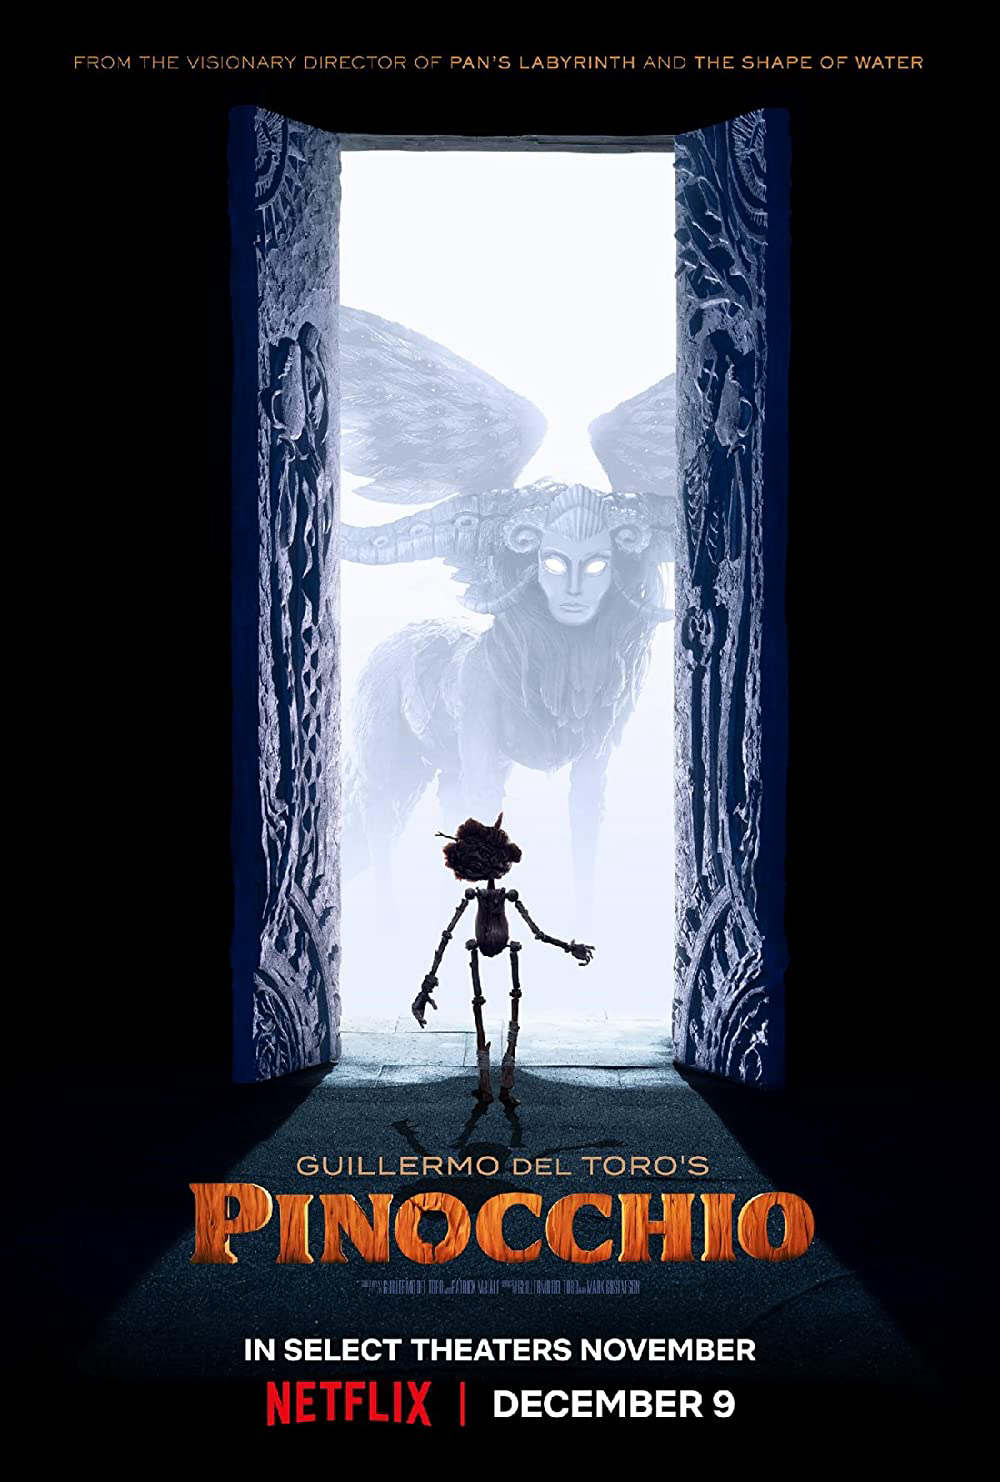 Pinocchio của Guillermo del Toro - Guillermo del Toro’s Pinocchio